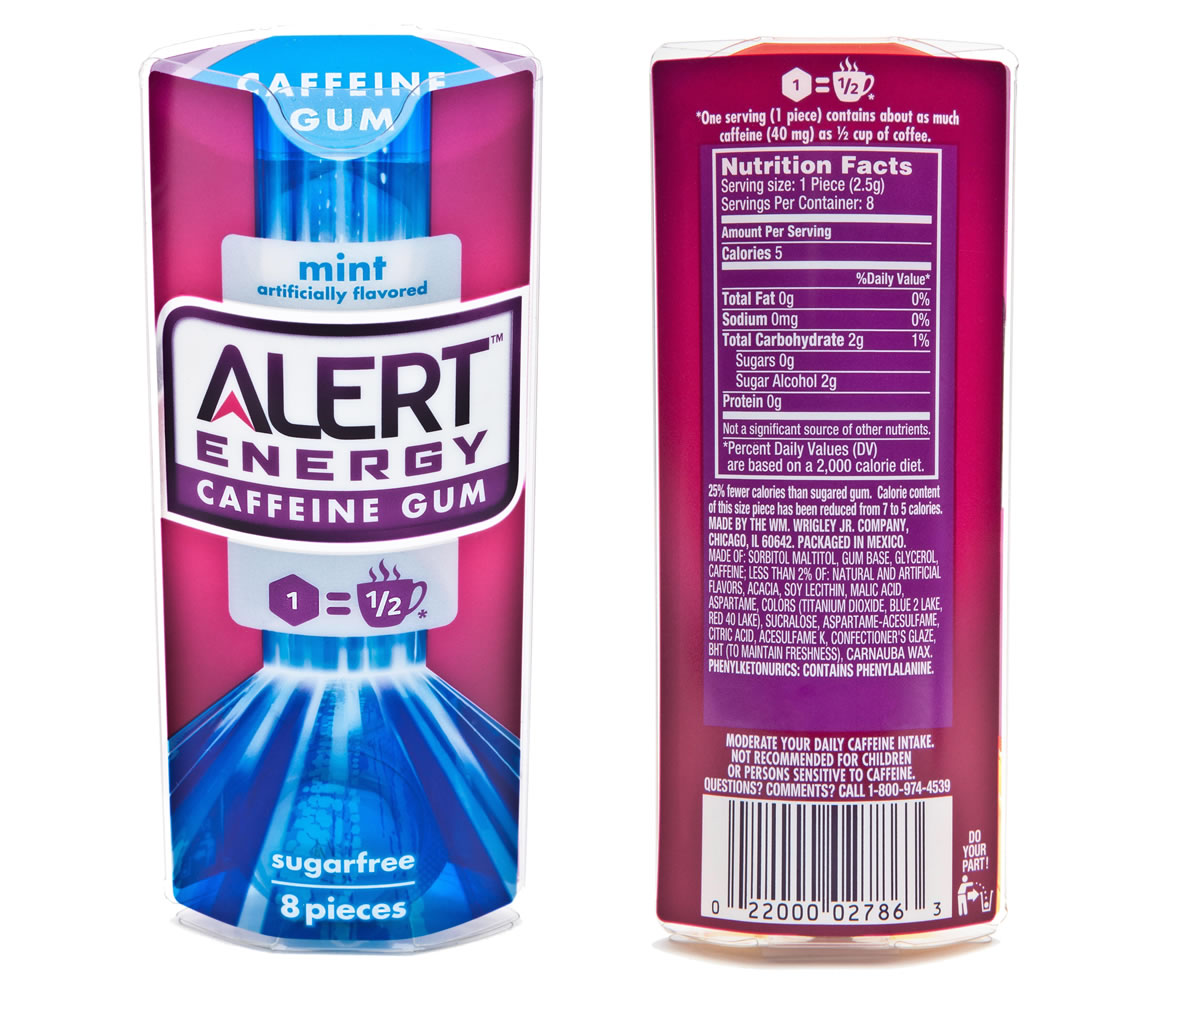 Alert Energy Caffeine Gum.